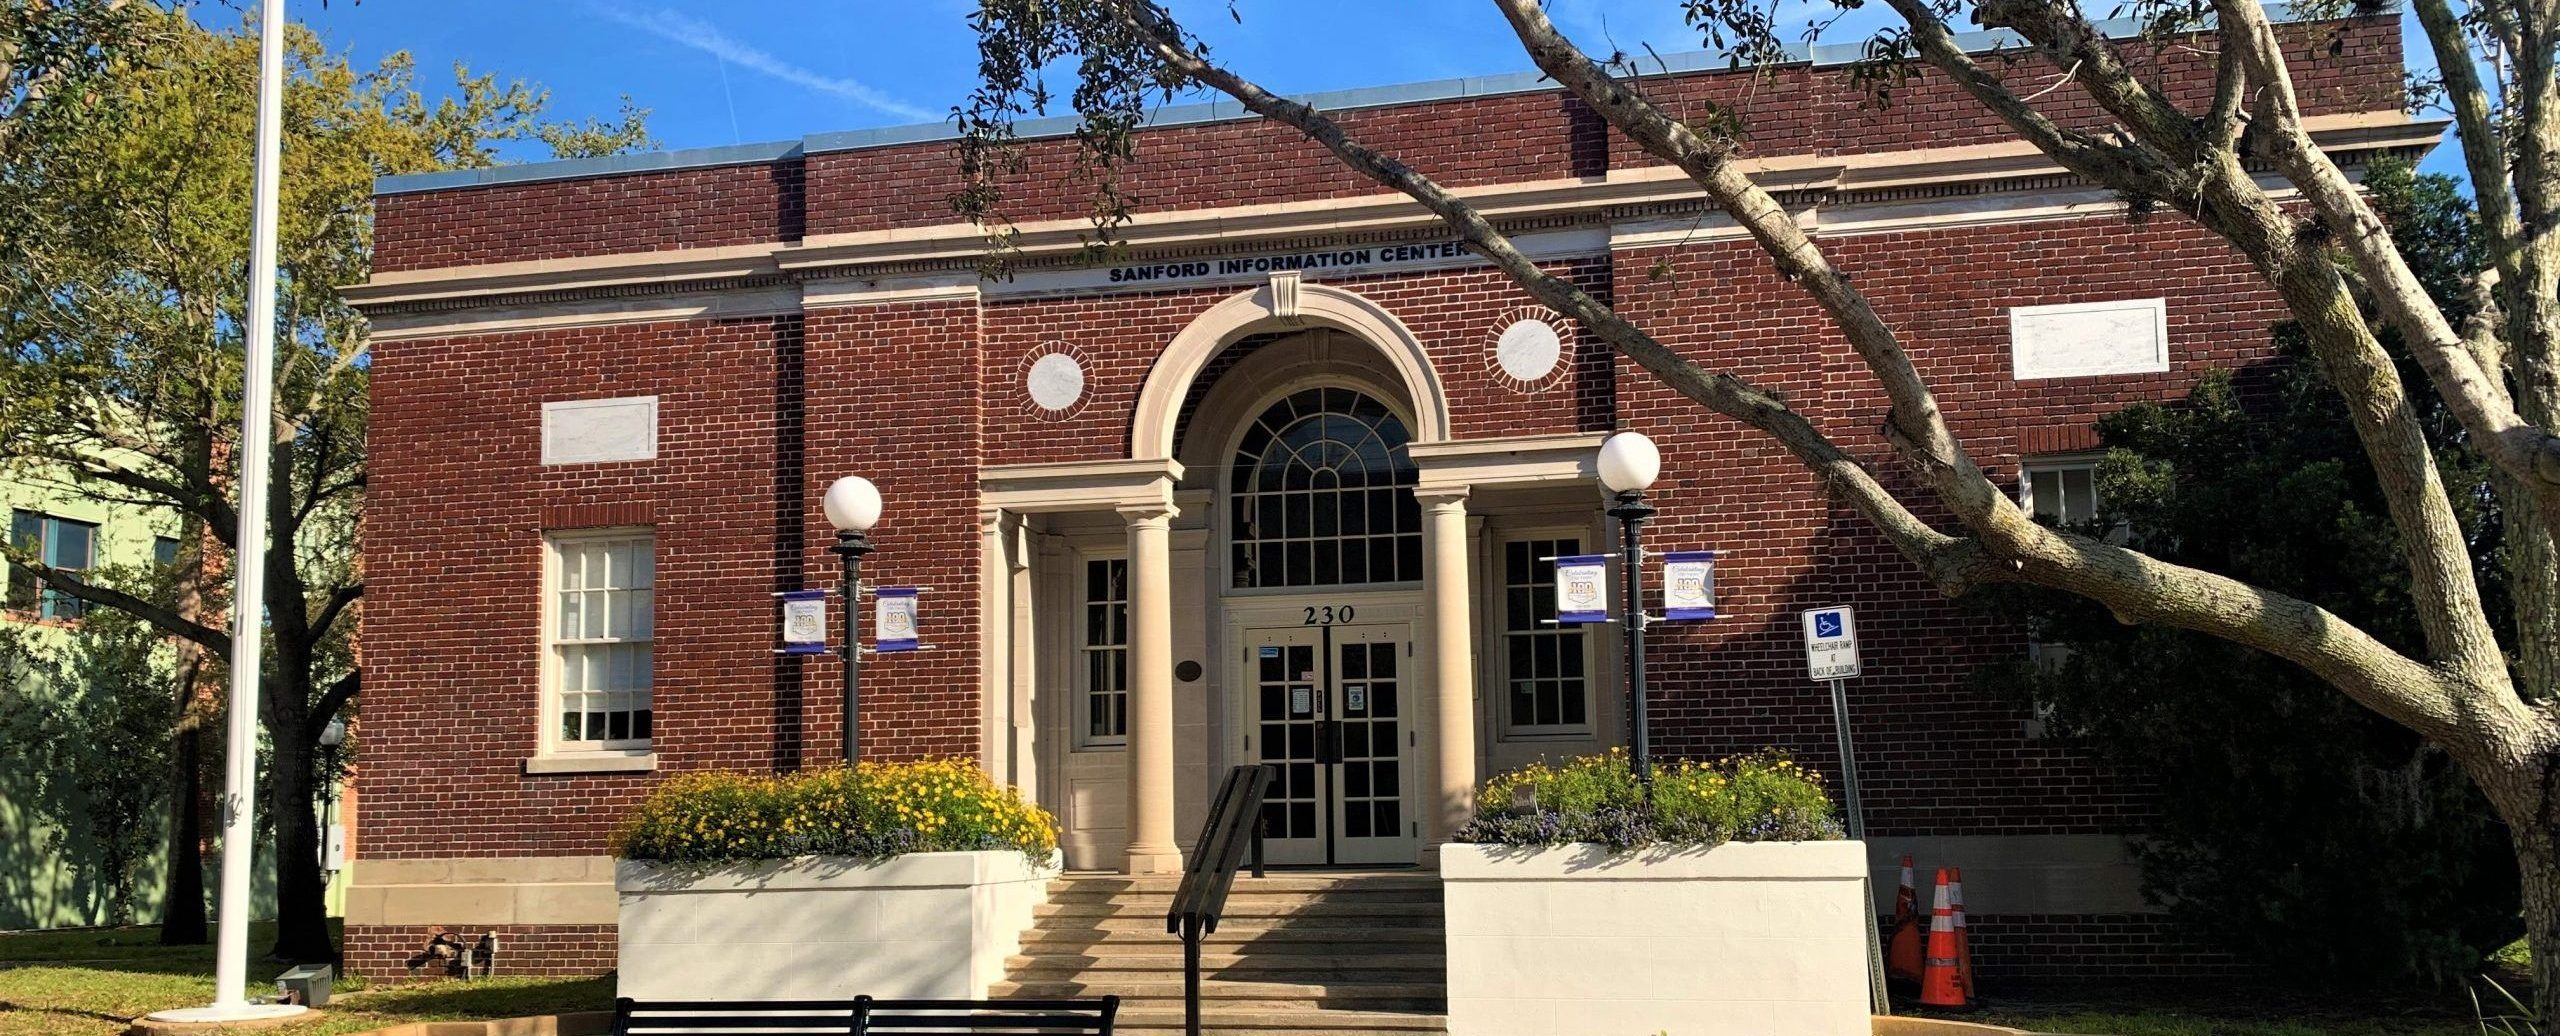 Sanford's Information Center